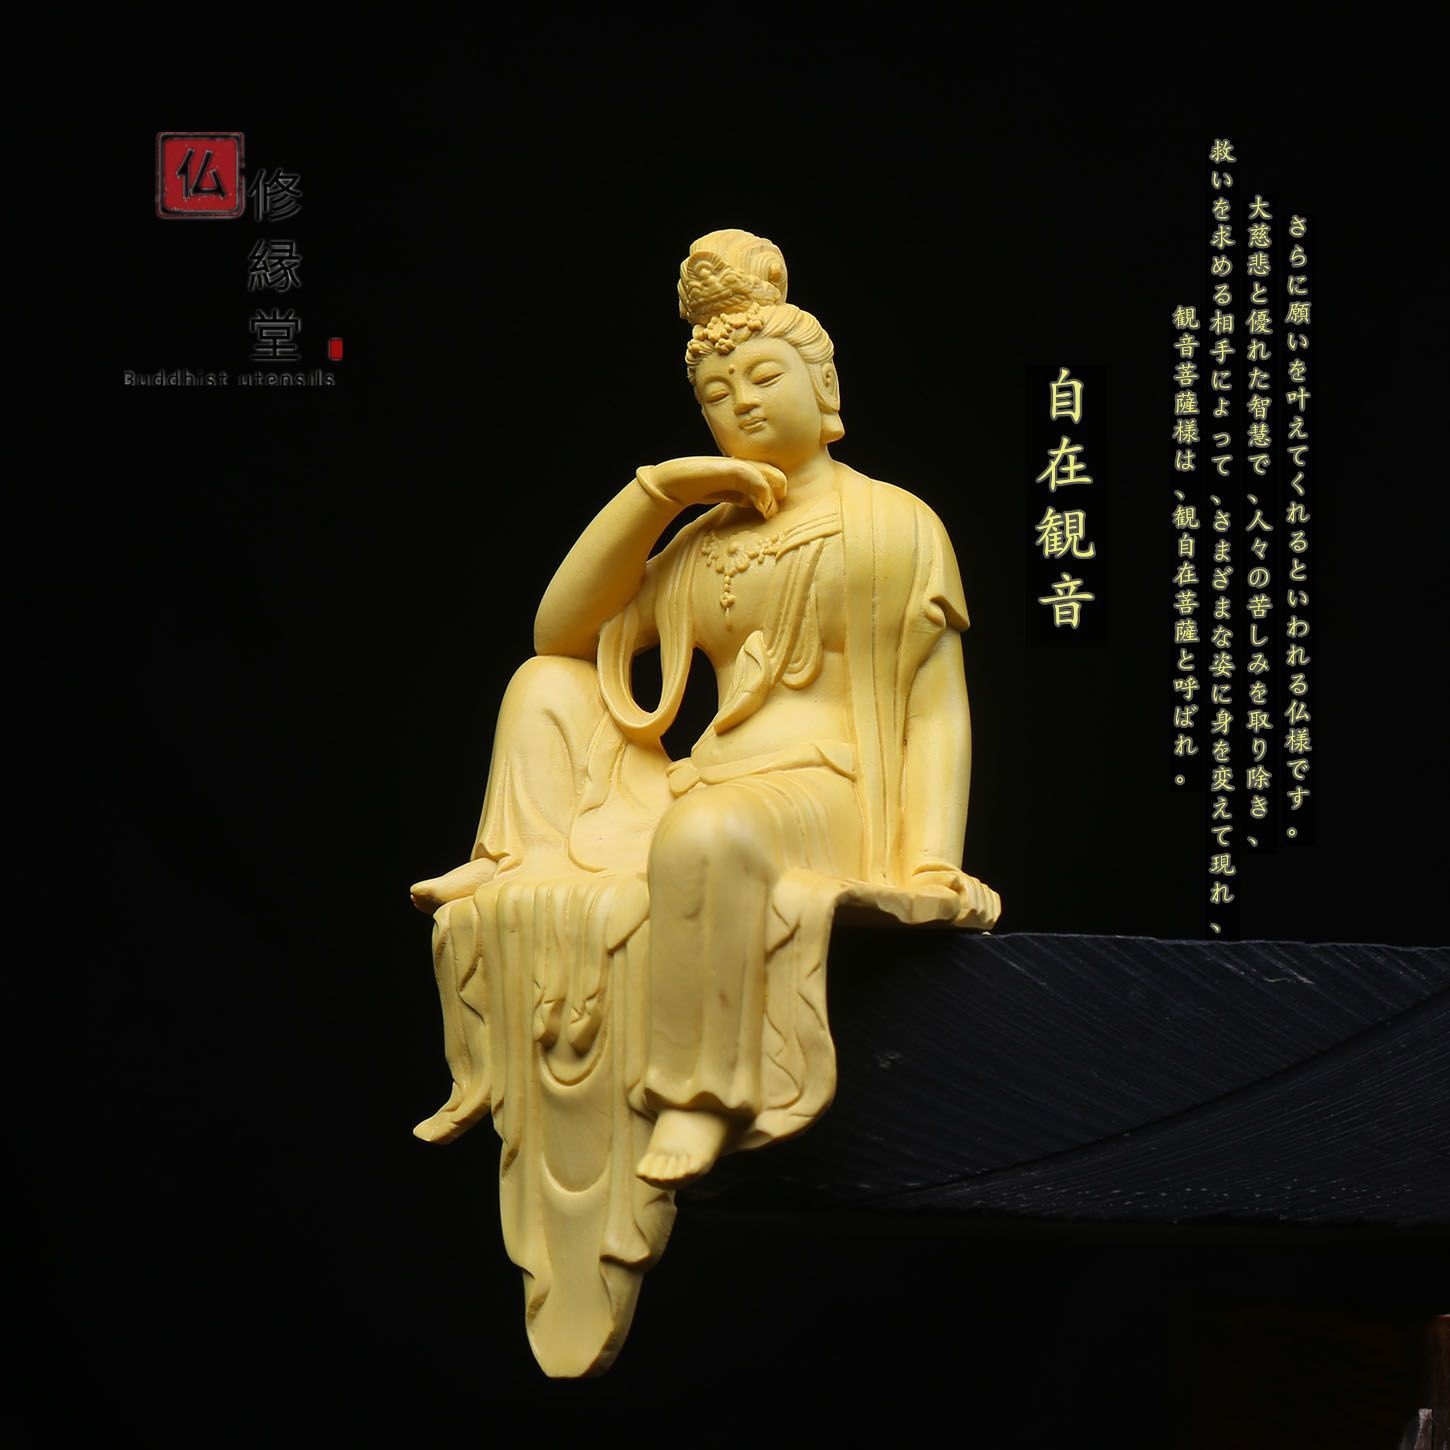 修縁堂】極上品 木彫仏像 水月自在観音菩薩立像 彫刻 仏教工芸 ご利益 